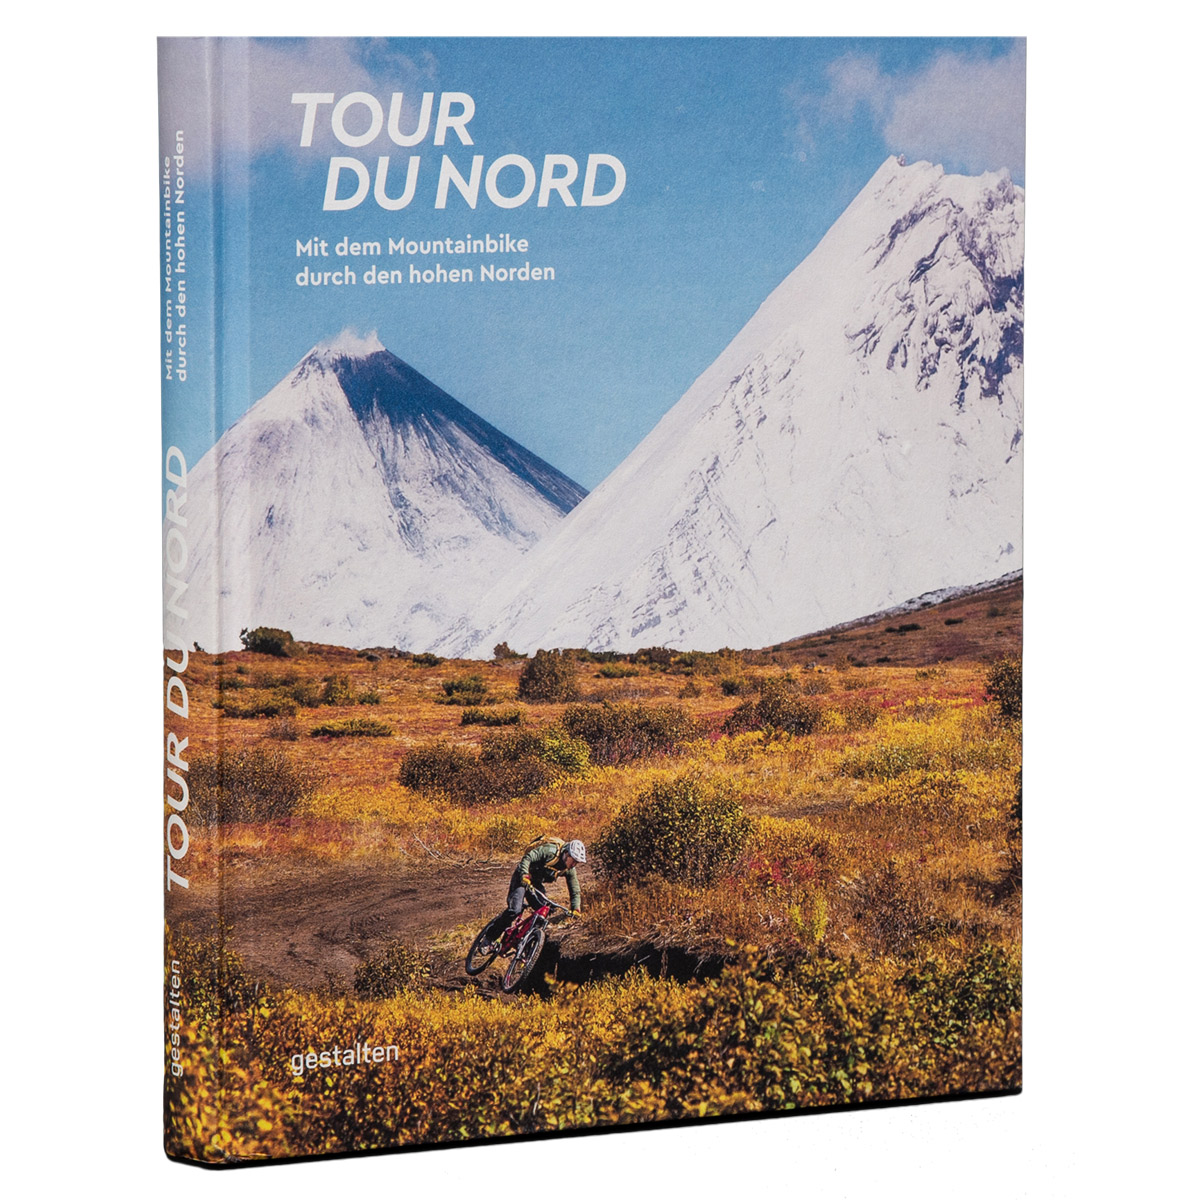 Produktbild von Tobias Woggon - Tour du Nord: Mit dem Mountainbike durch den hohen Norden